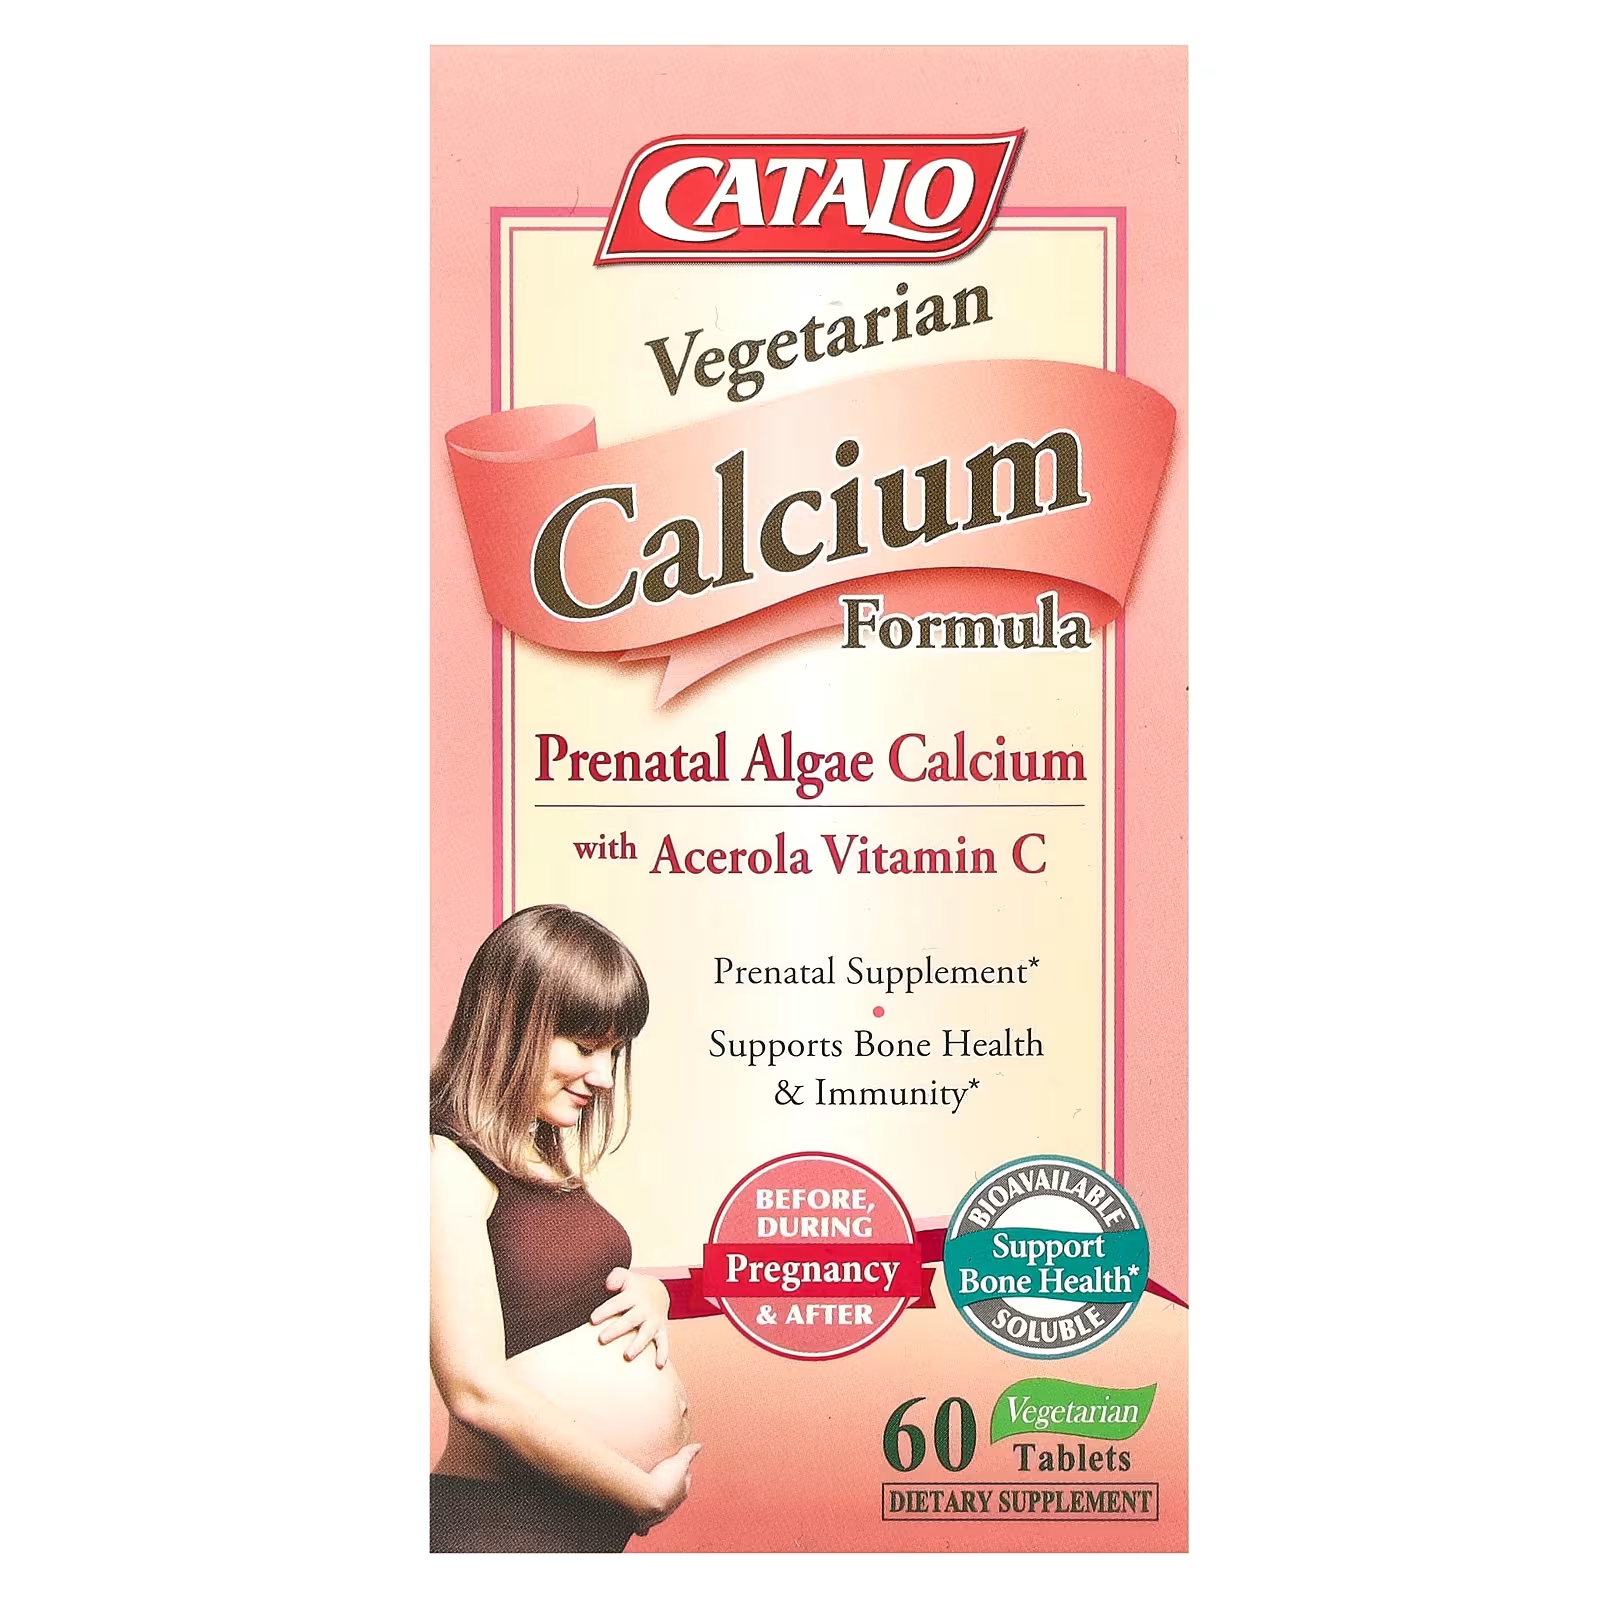 Вегетарианская формула кальция Catalo Naturals для беременных с витамином С, 60 вегетарианских таблеток catalo naturals формула с витамином c для детей 50 мг 60 вегетарианских жевательных таблеток